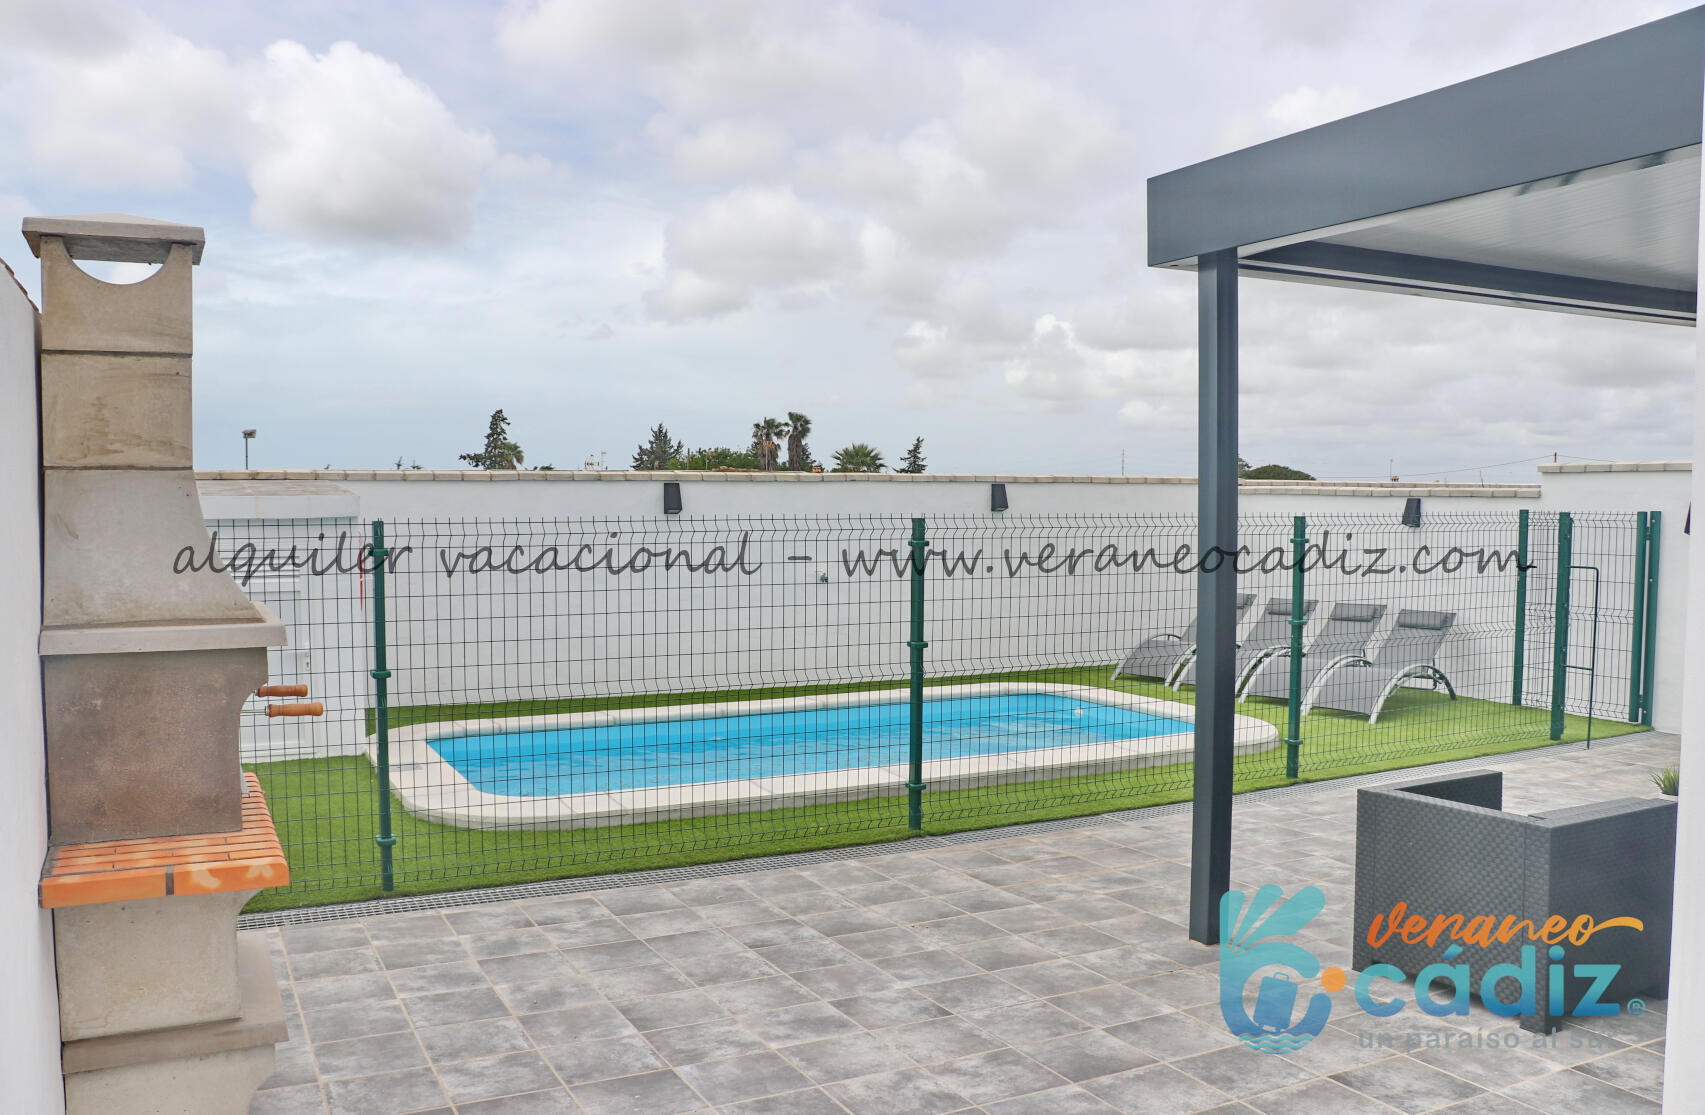 Alquiler apartamento con piscina privada en Conil | Conil 600